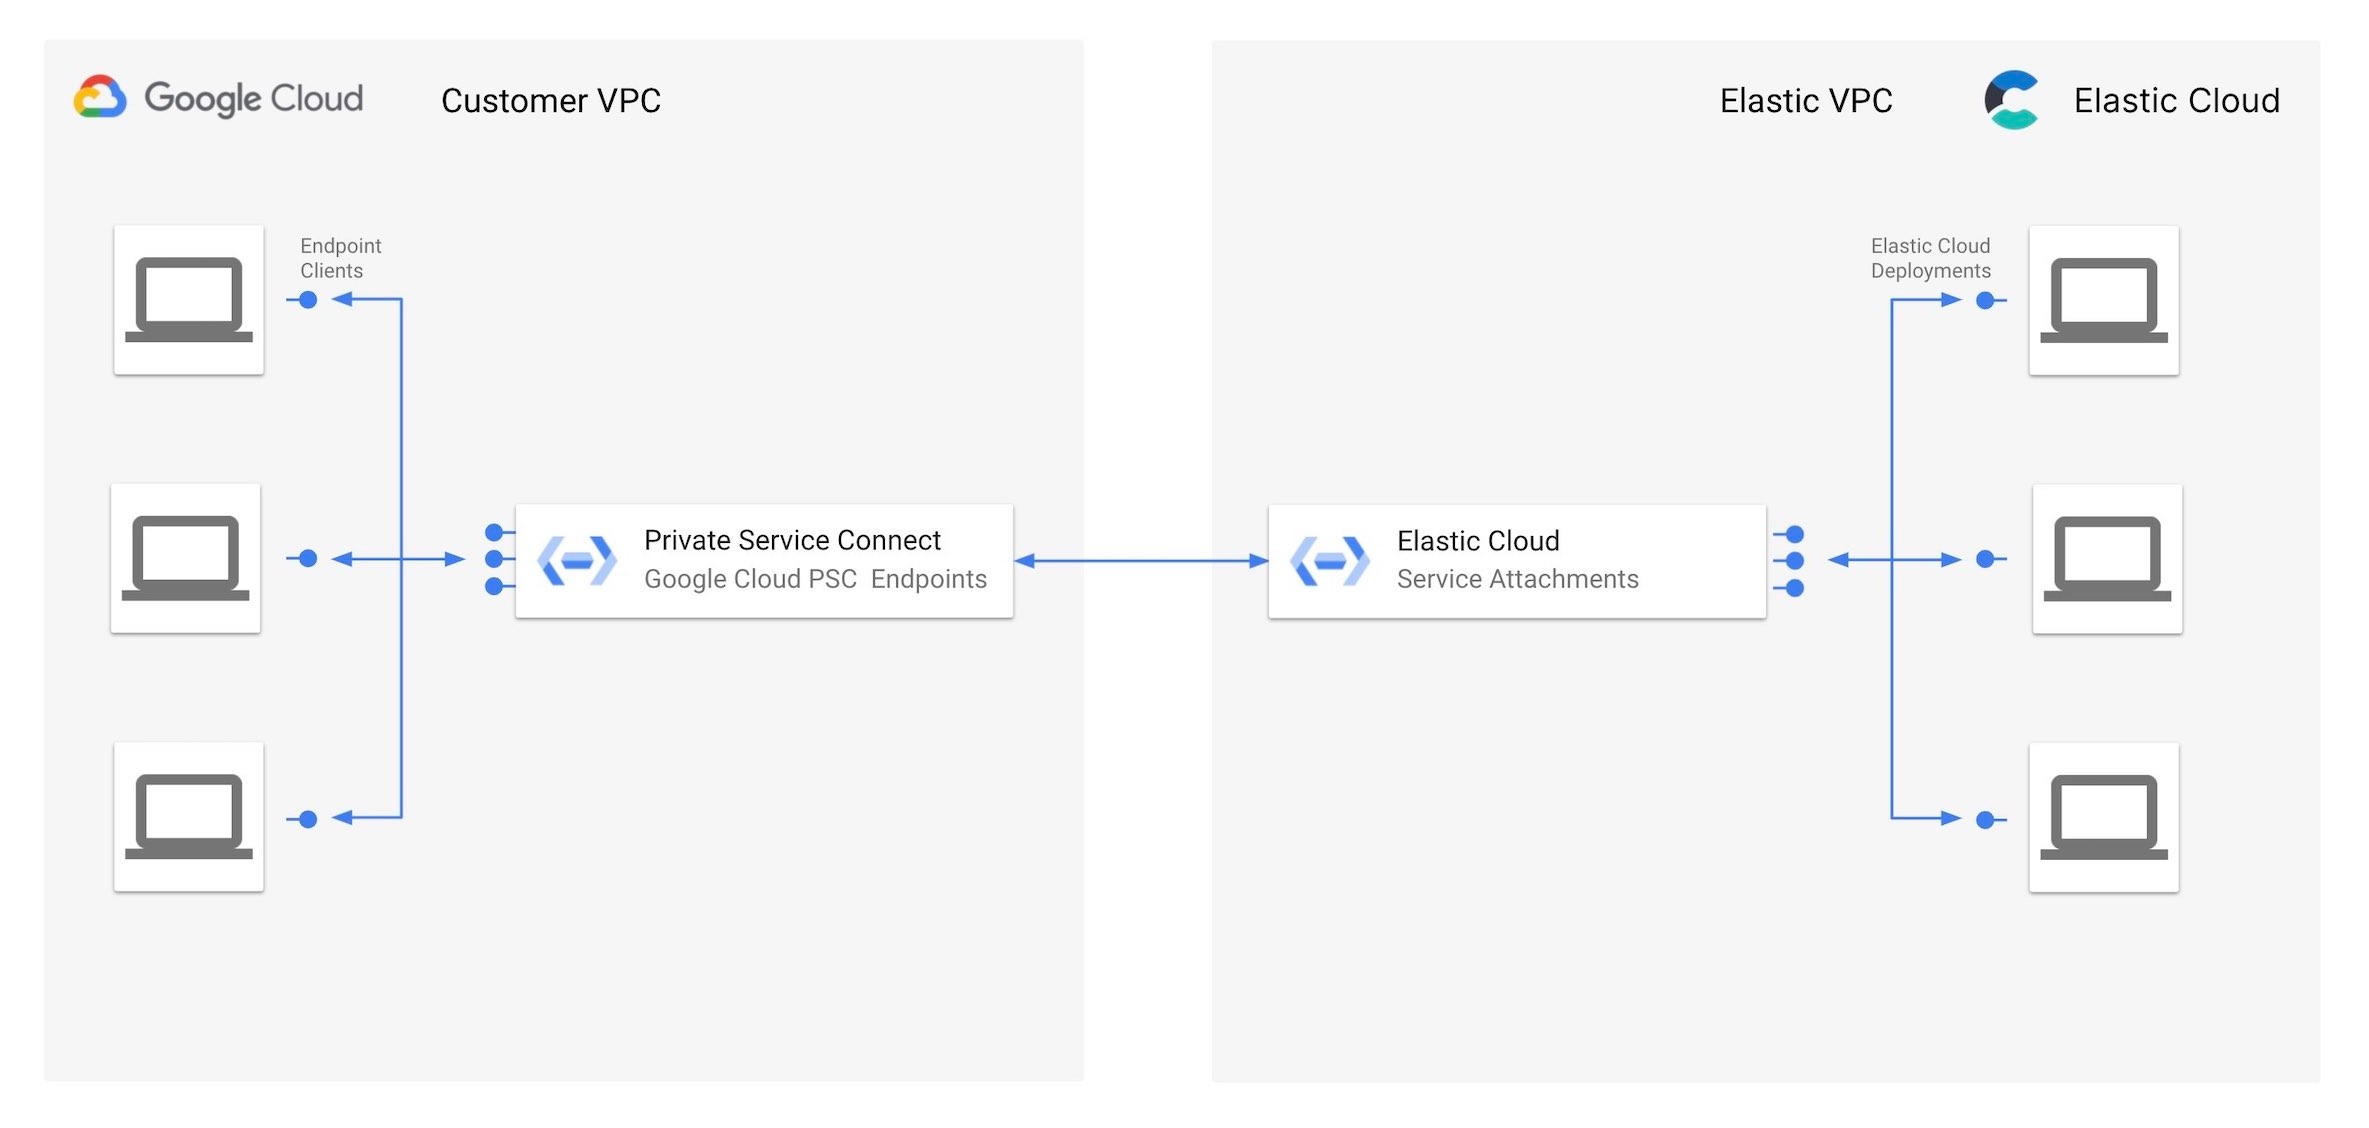 O Google Private Service Connect fornece acesso fácil e privado aos endpoints da implantação do Elastic Cloud enquanto mantém todo o tráfego dentro da rede do Google